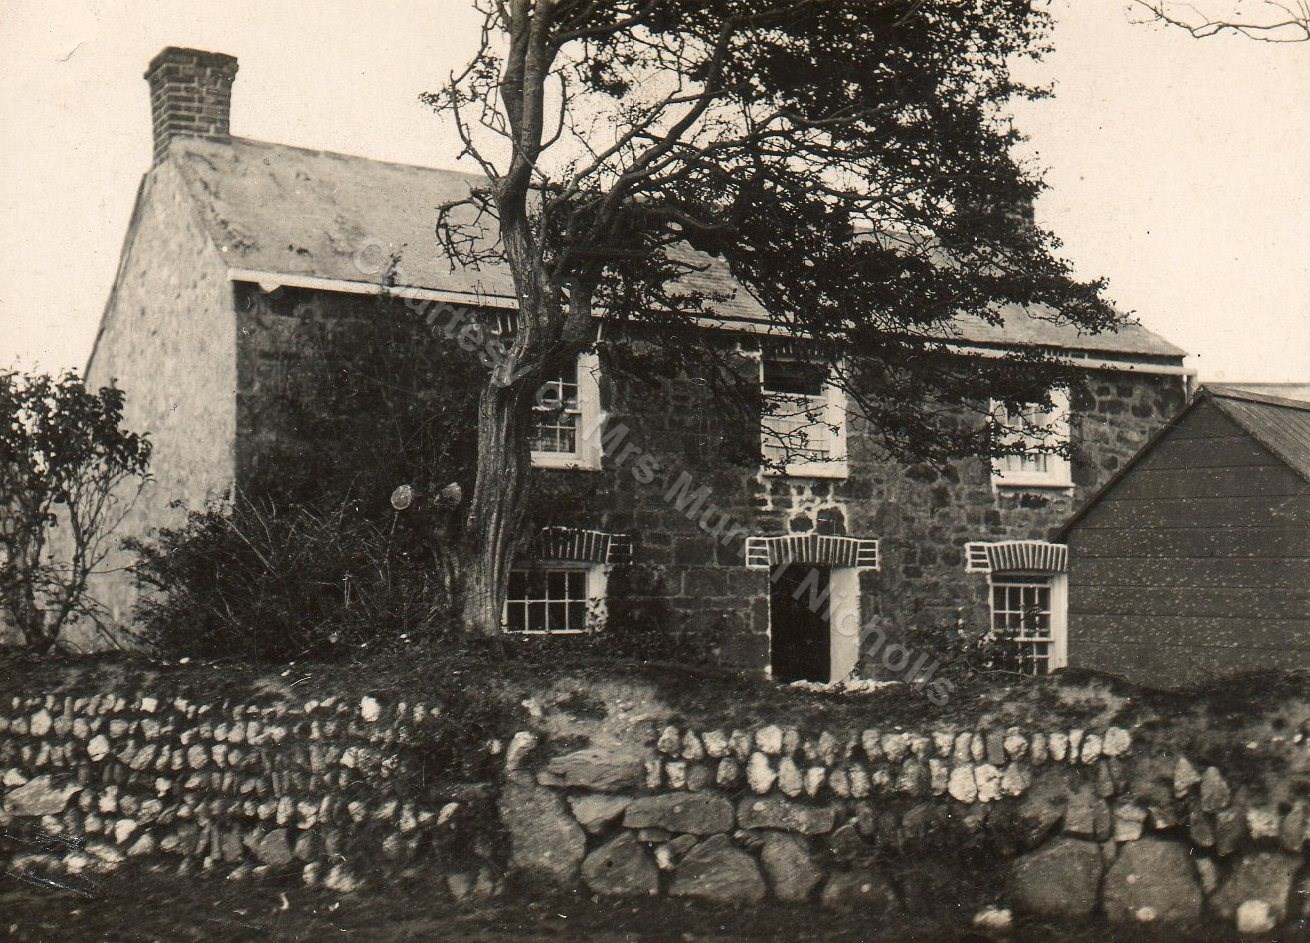 Churchtown Farm Circa 1950